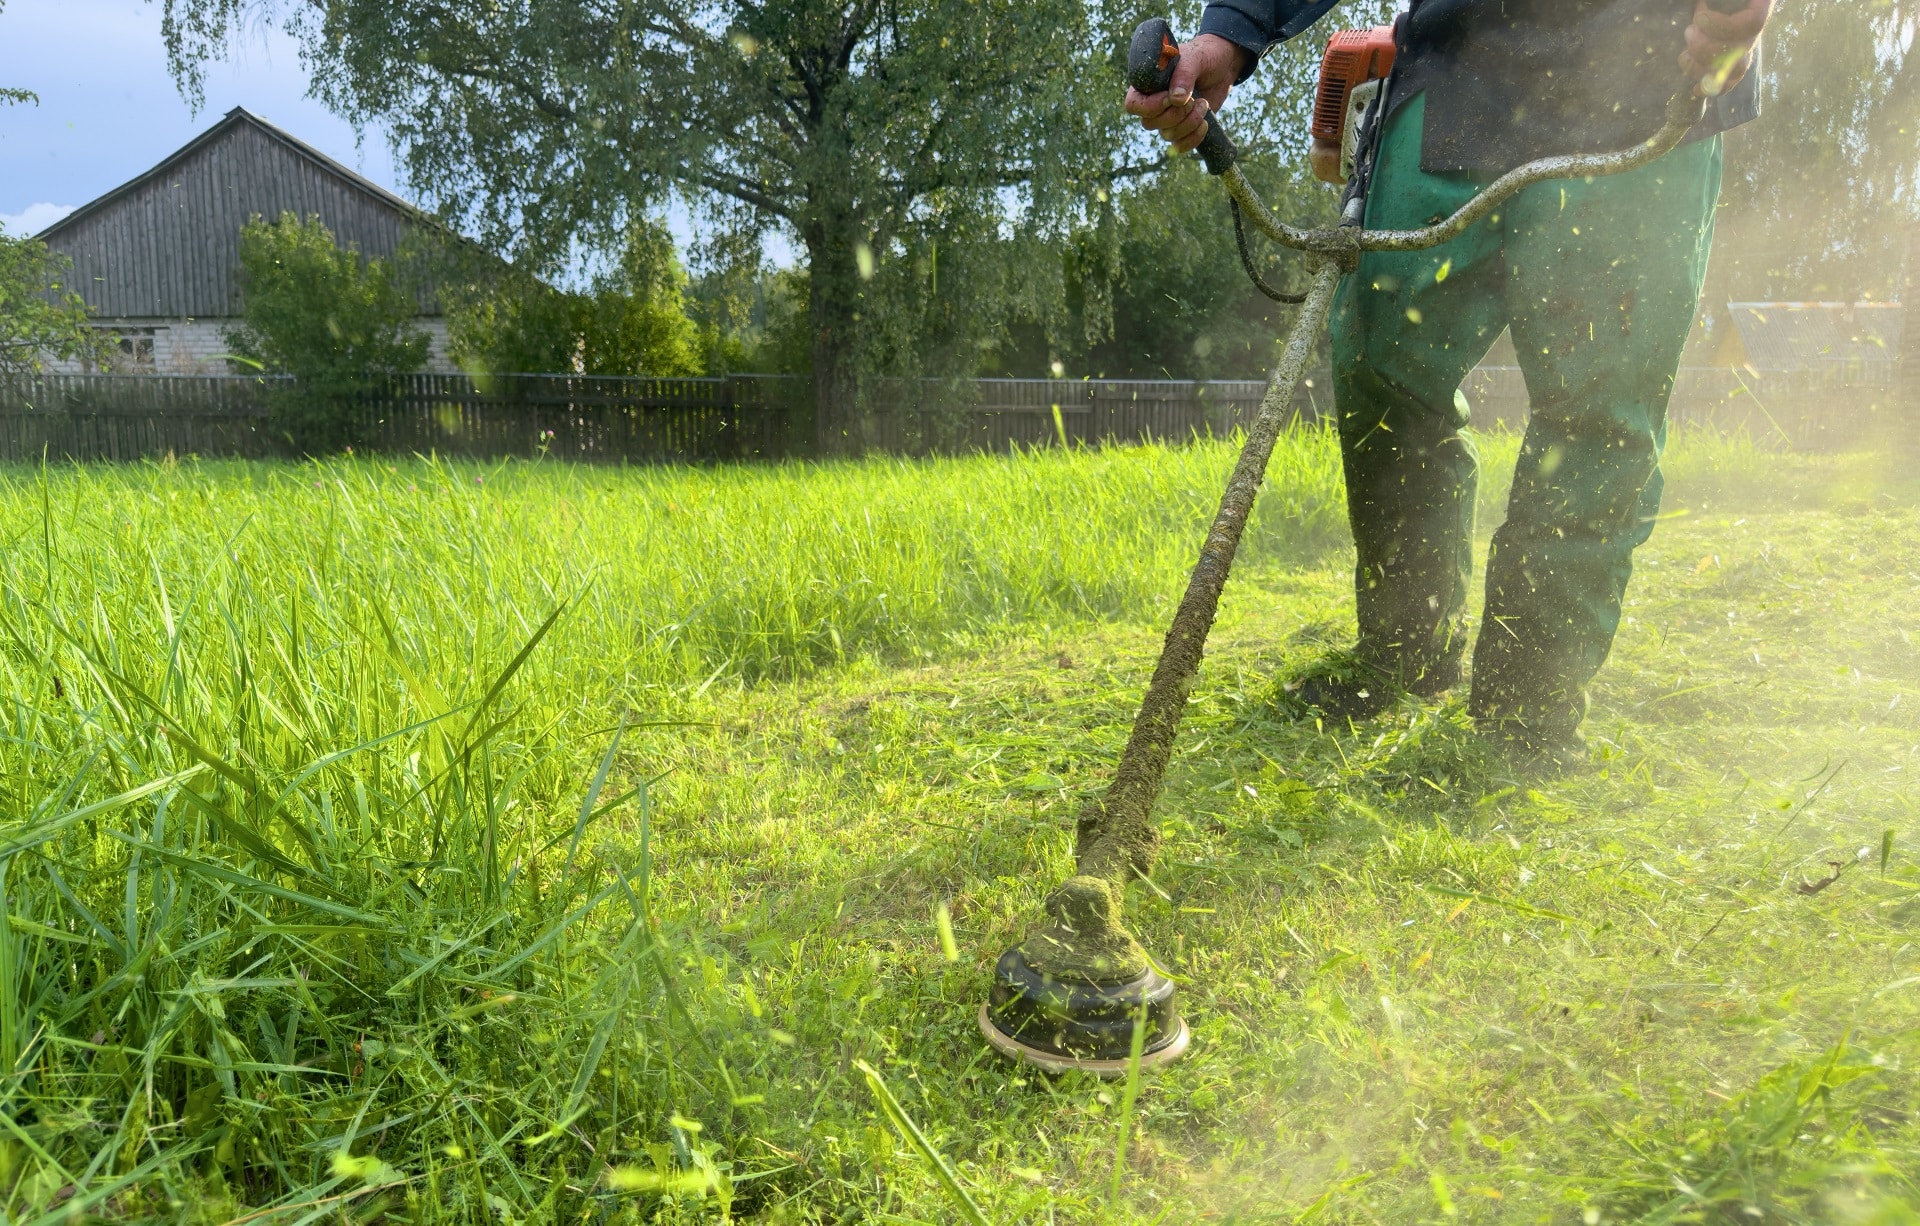 Can Artificial Grass Help Allergy Sufferers?